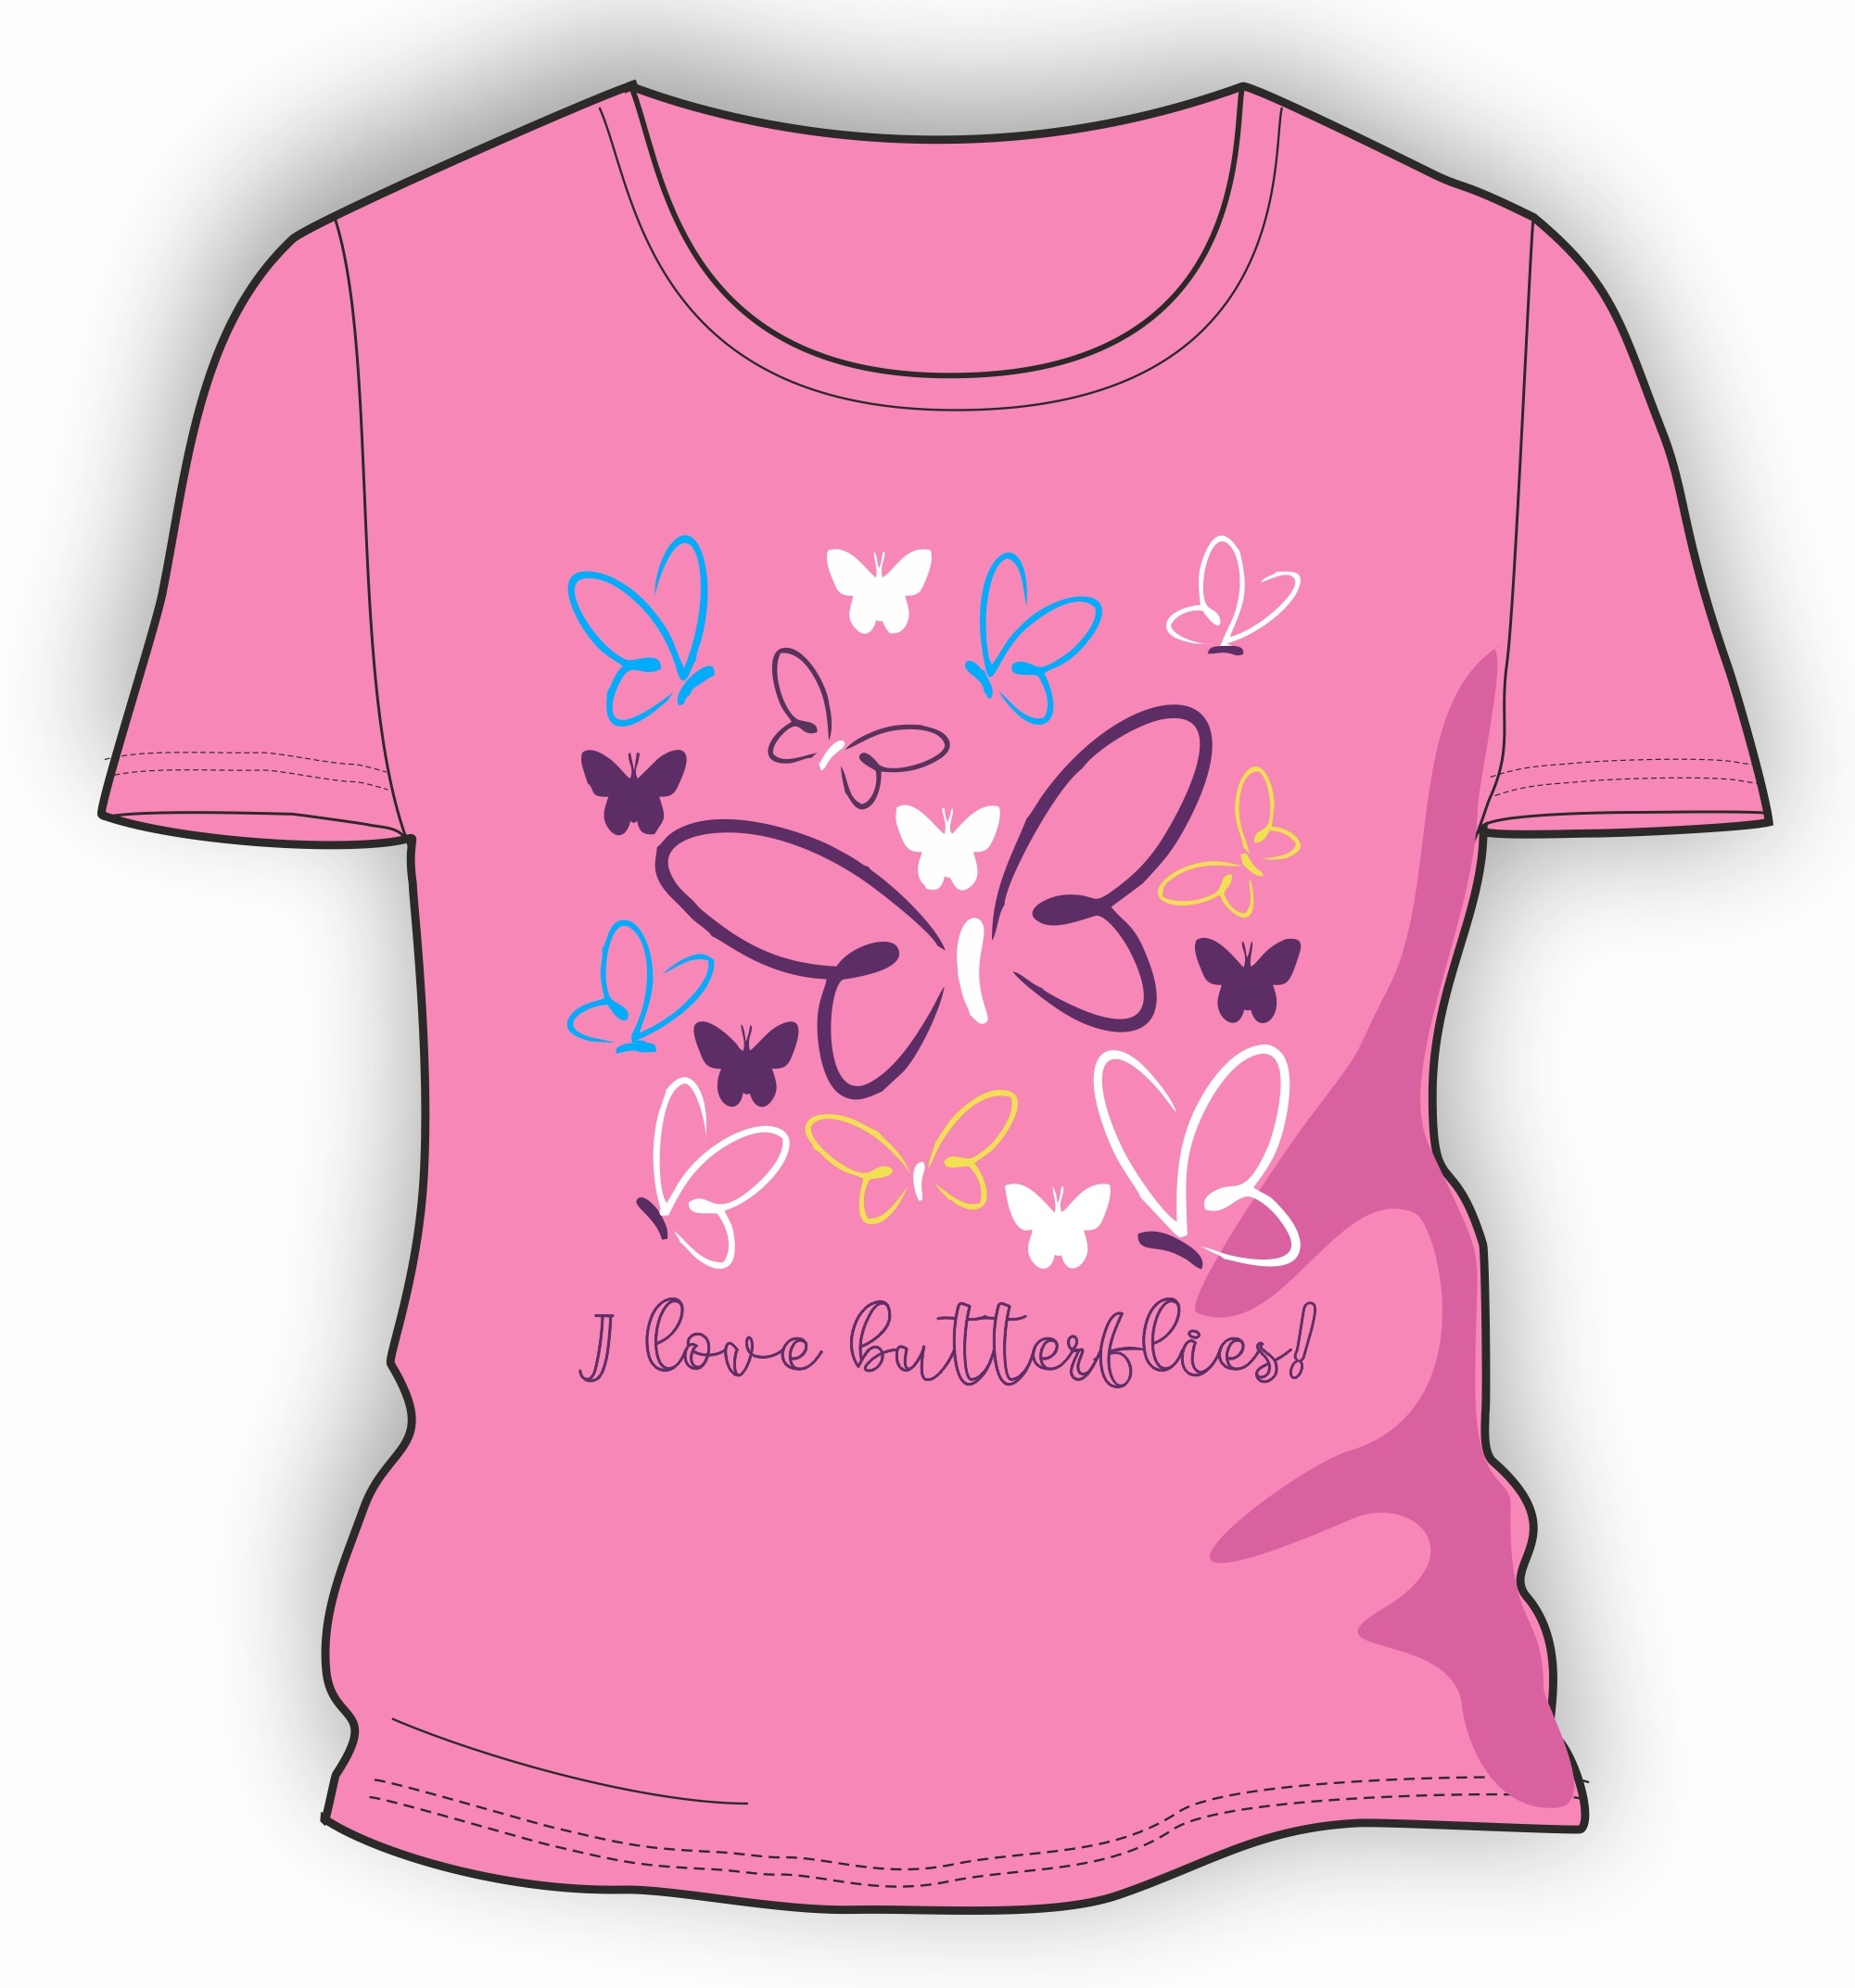 Розовая футболка для девочки. Розовая футболка детская. Ребенок в розовой футболке. Детские майки. Футболка для девочки розовая.